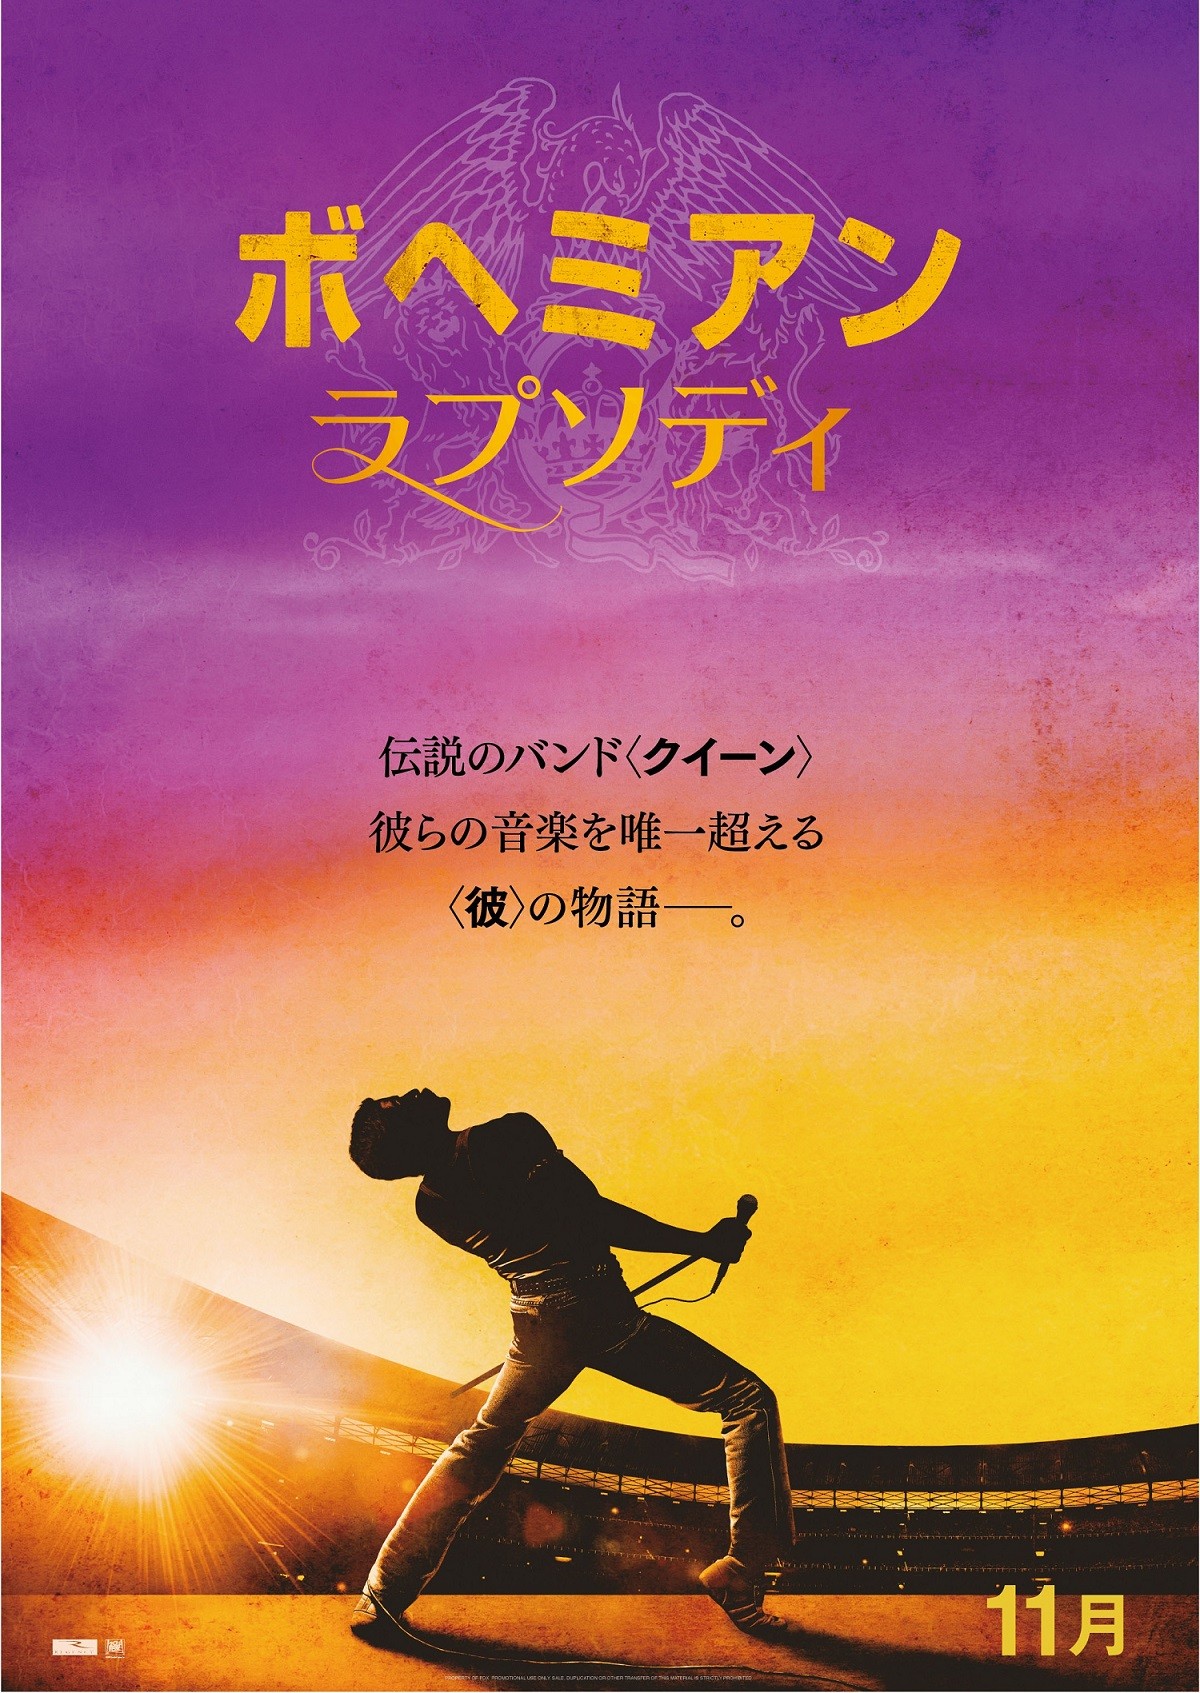 【映画ランキング】劇場版『Fate』第2章が初登場V、『ボヘミアン・ラプソディ』は2018年公開作トップに